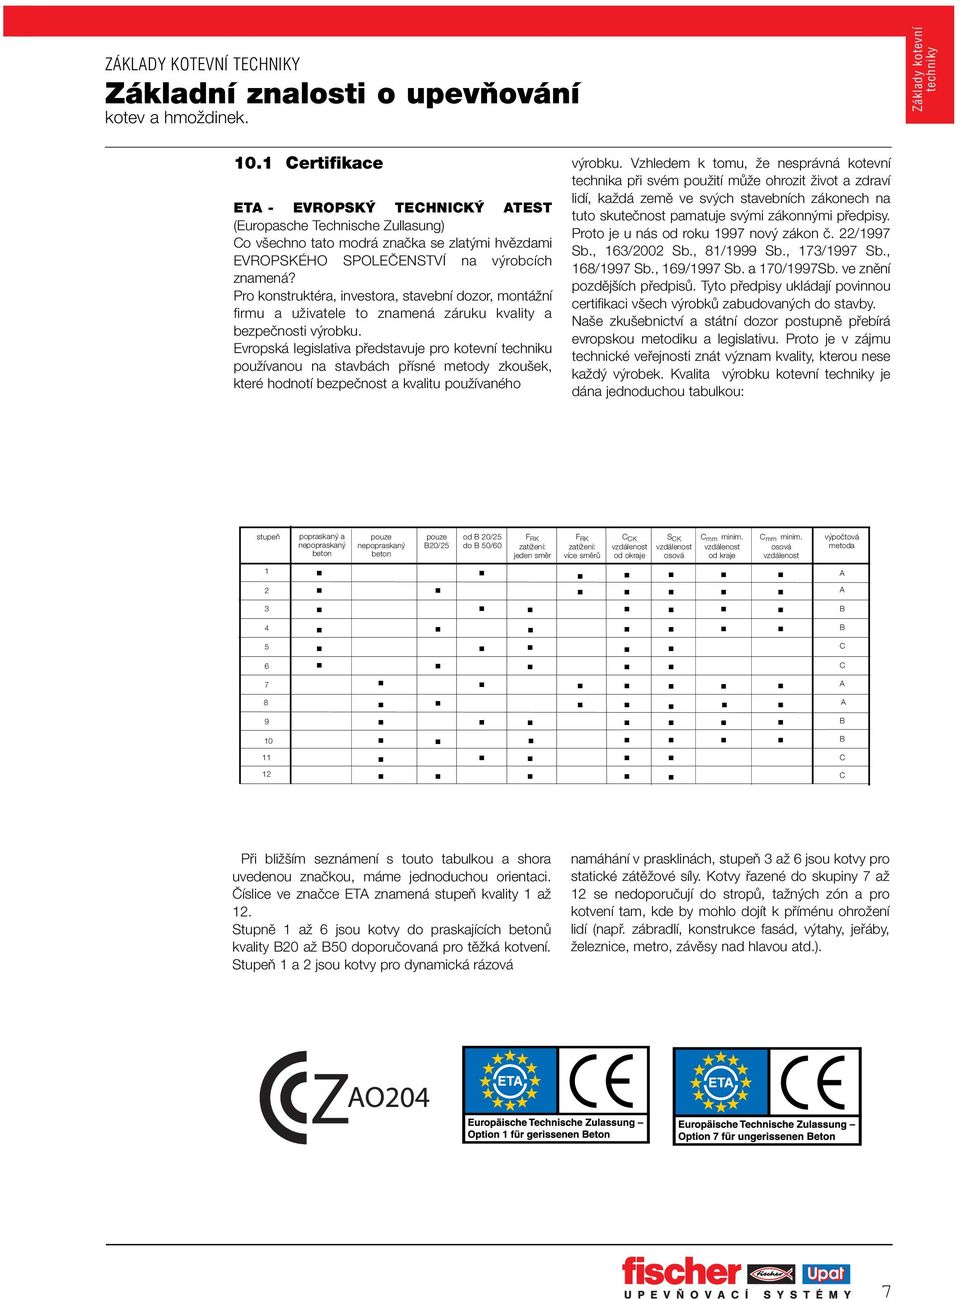 Evropská legislativa pfiedstavuje pro kotevní techniku pouïívanou na stavbách pfiísné metody zkou ek, které hodnotí bezpeãnost a kvalitu pouïívaného v robku.